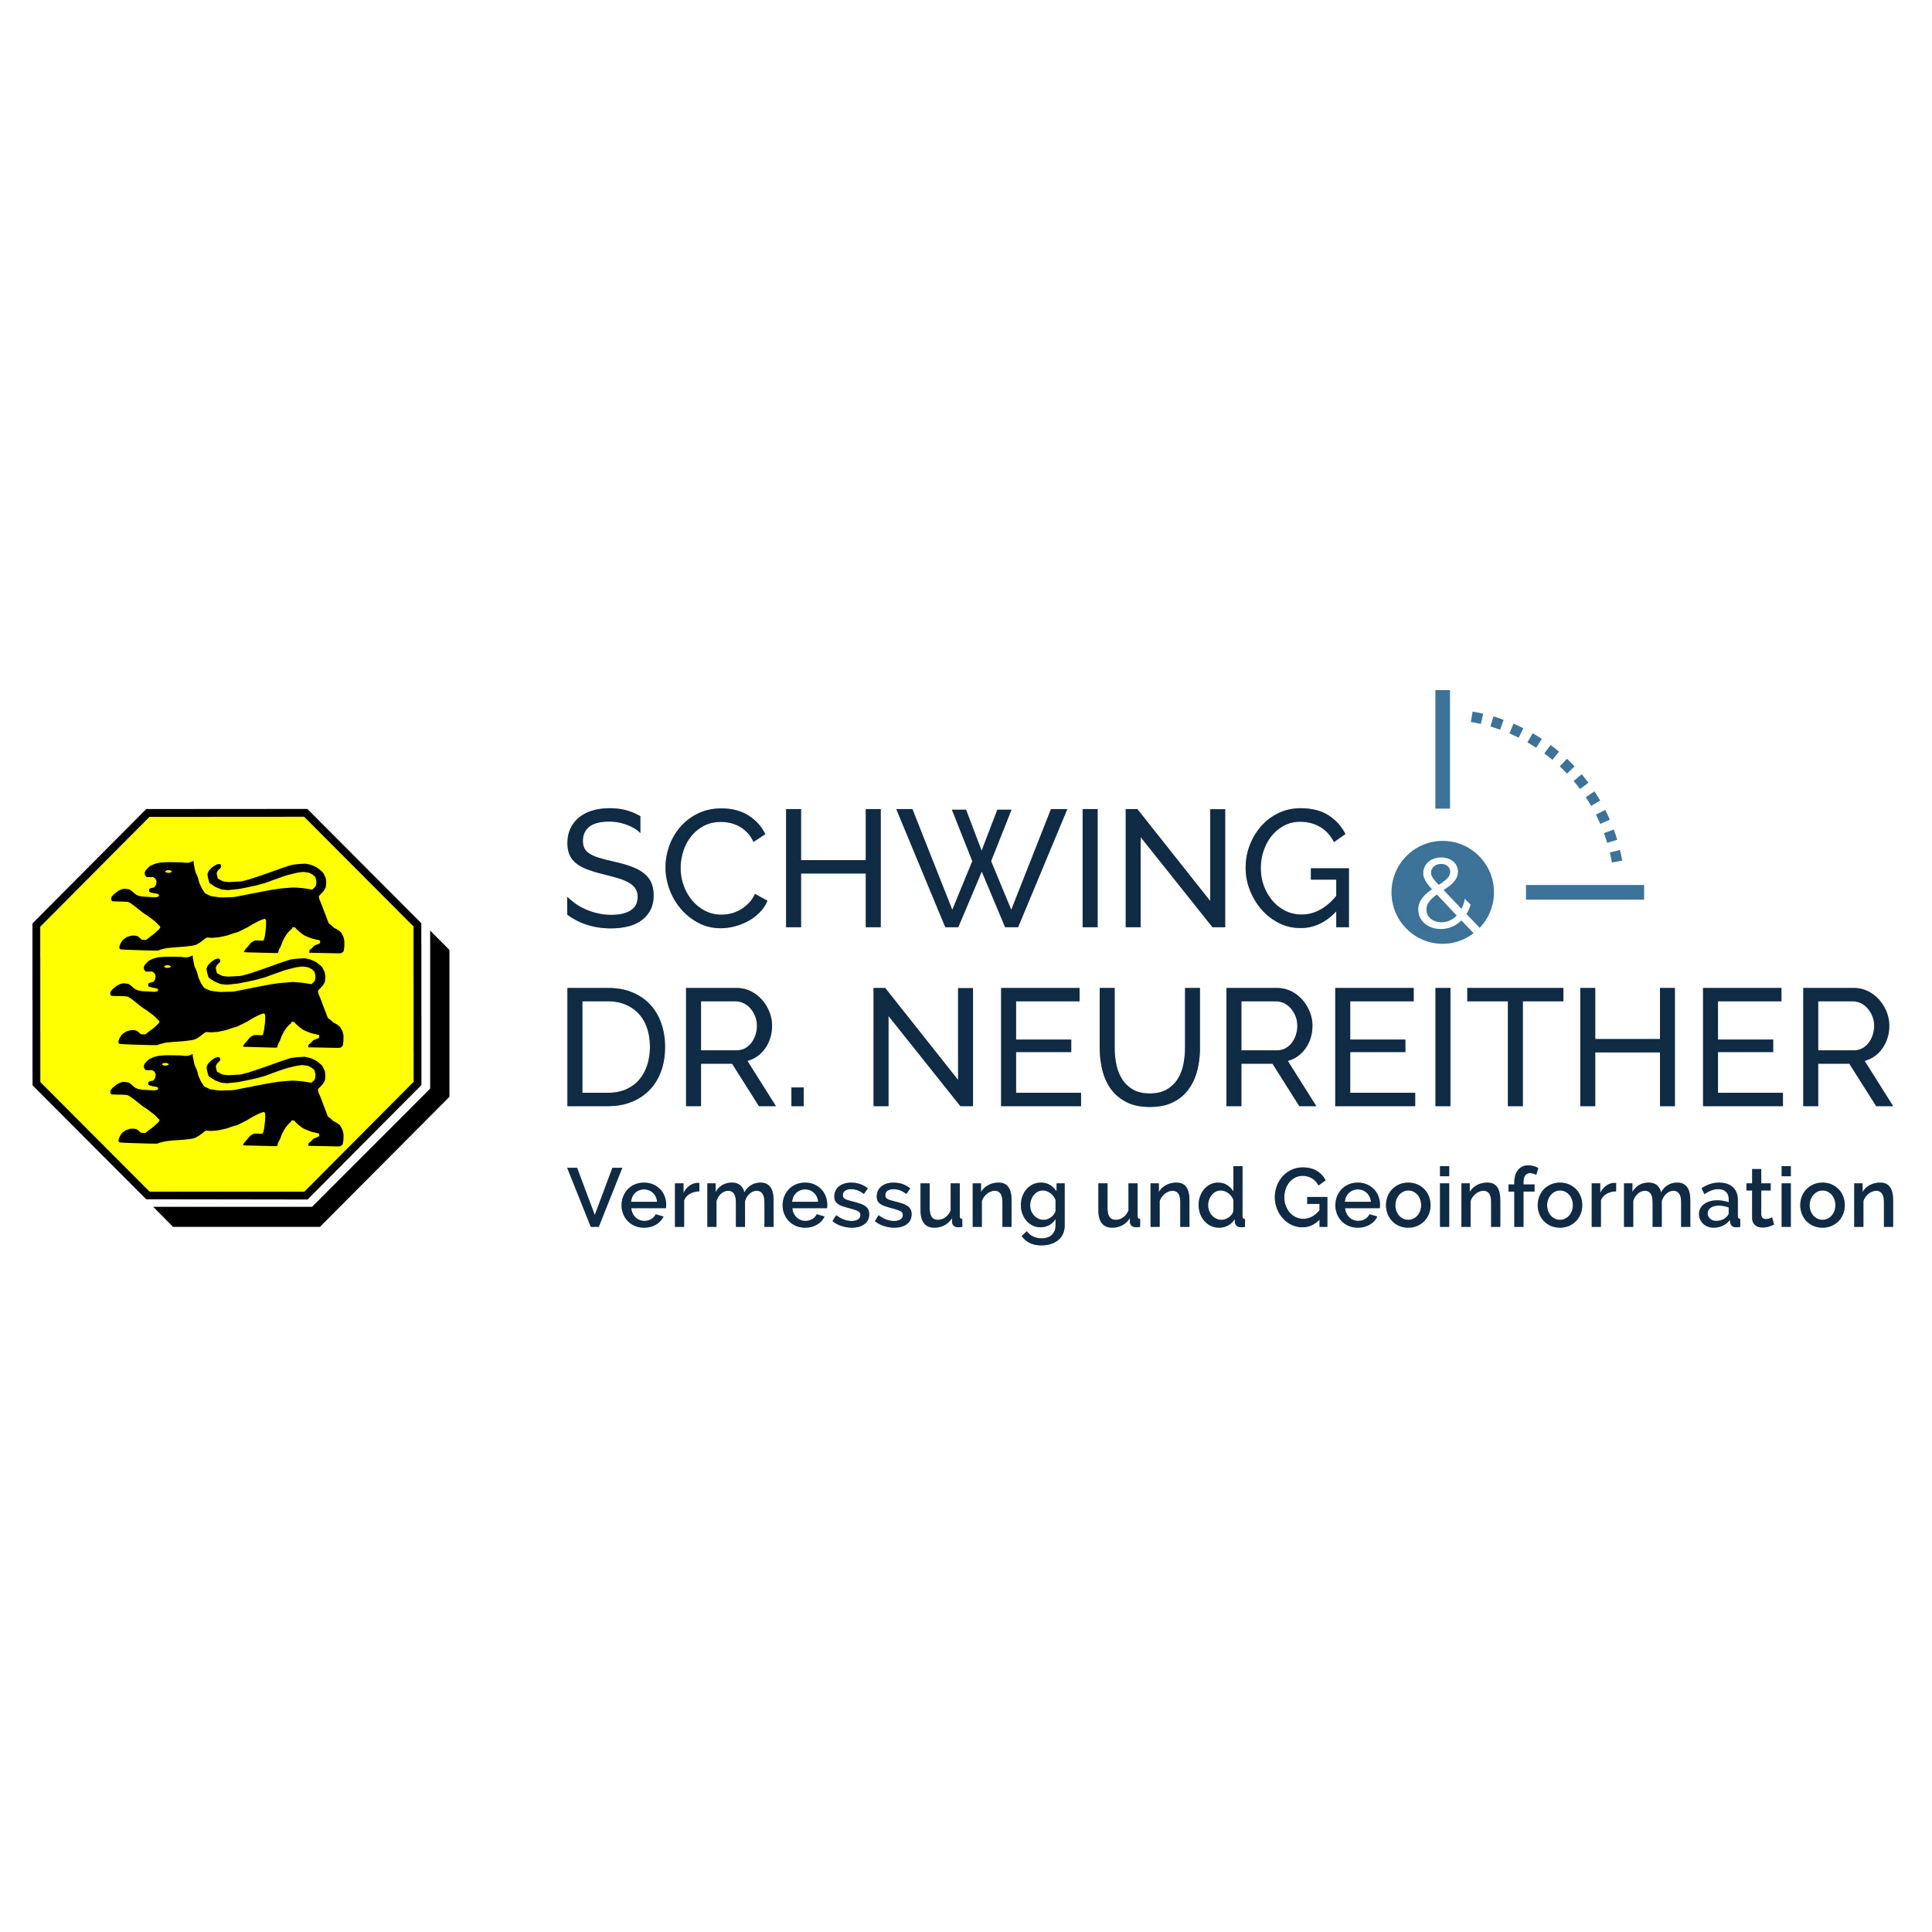 Vermessungsbüro Schwing & Dr. Neureither  